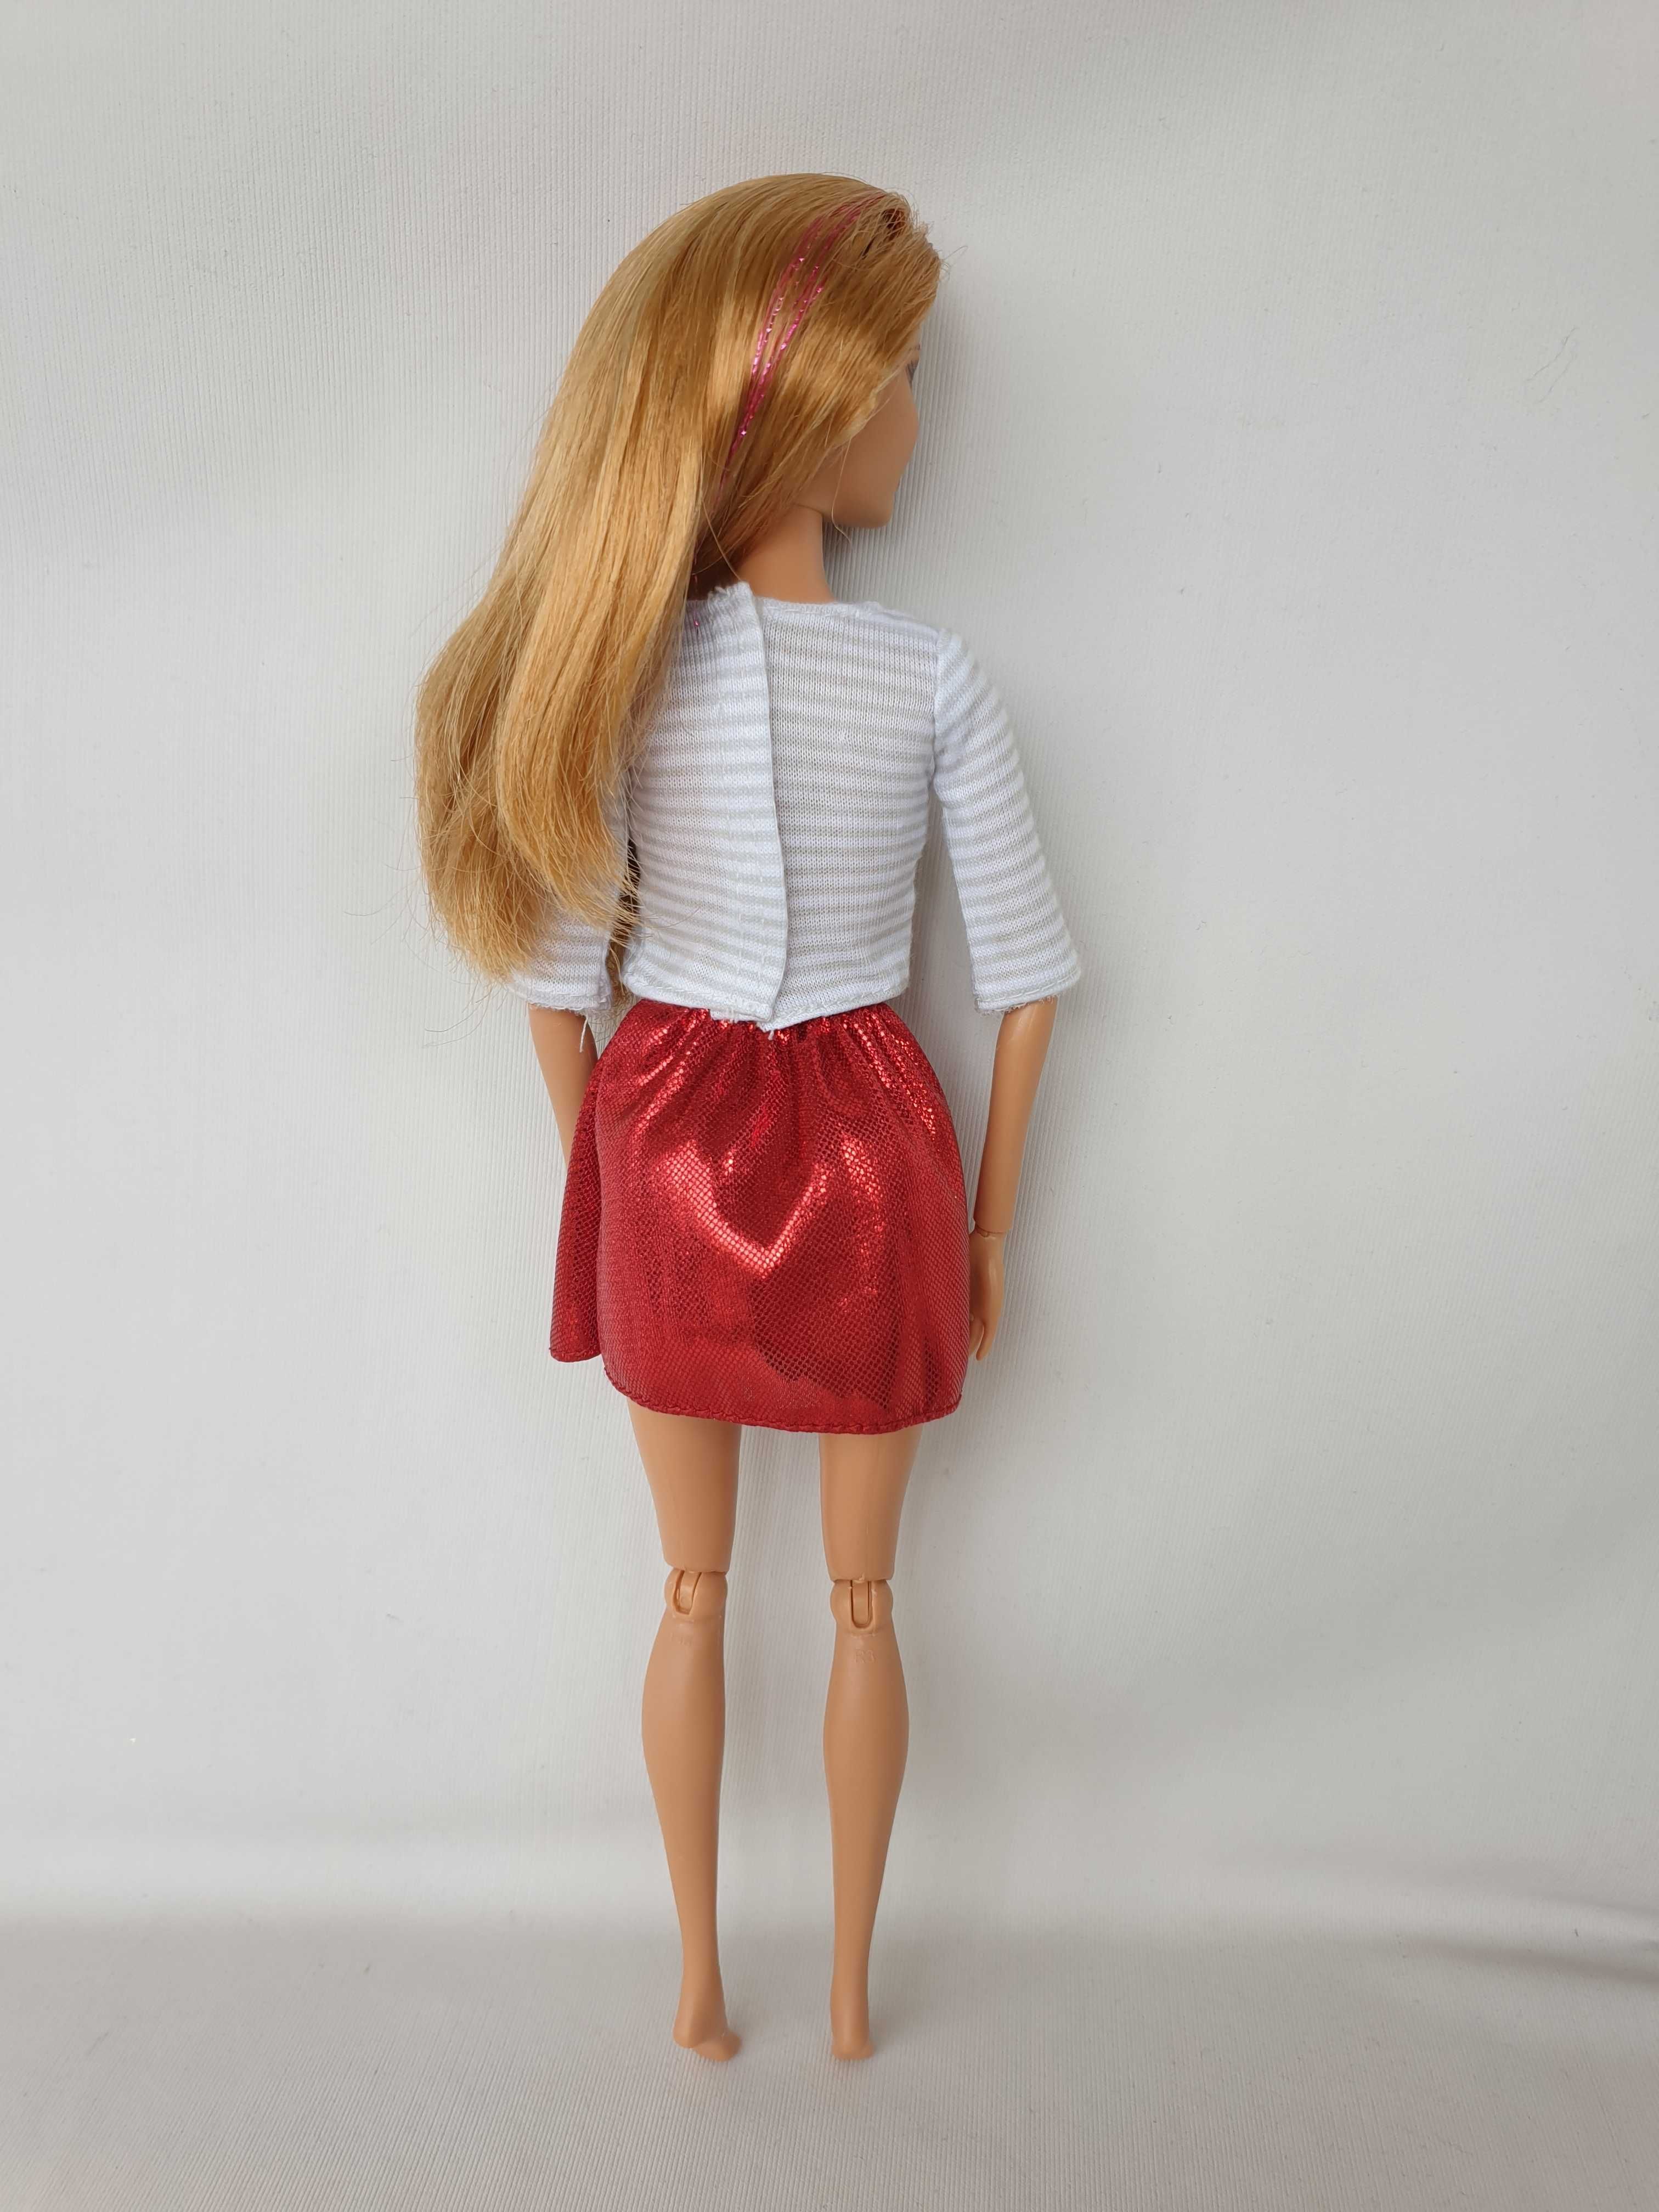 Кукла Барби Barbie Fashionistas 2012